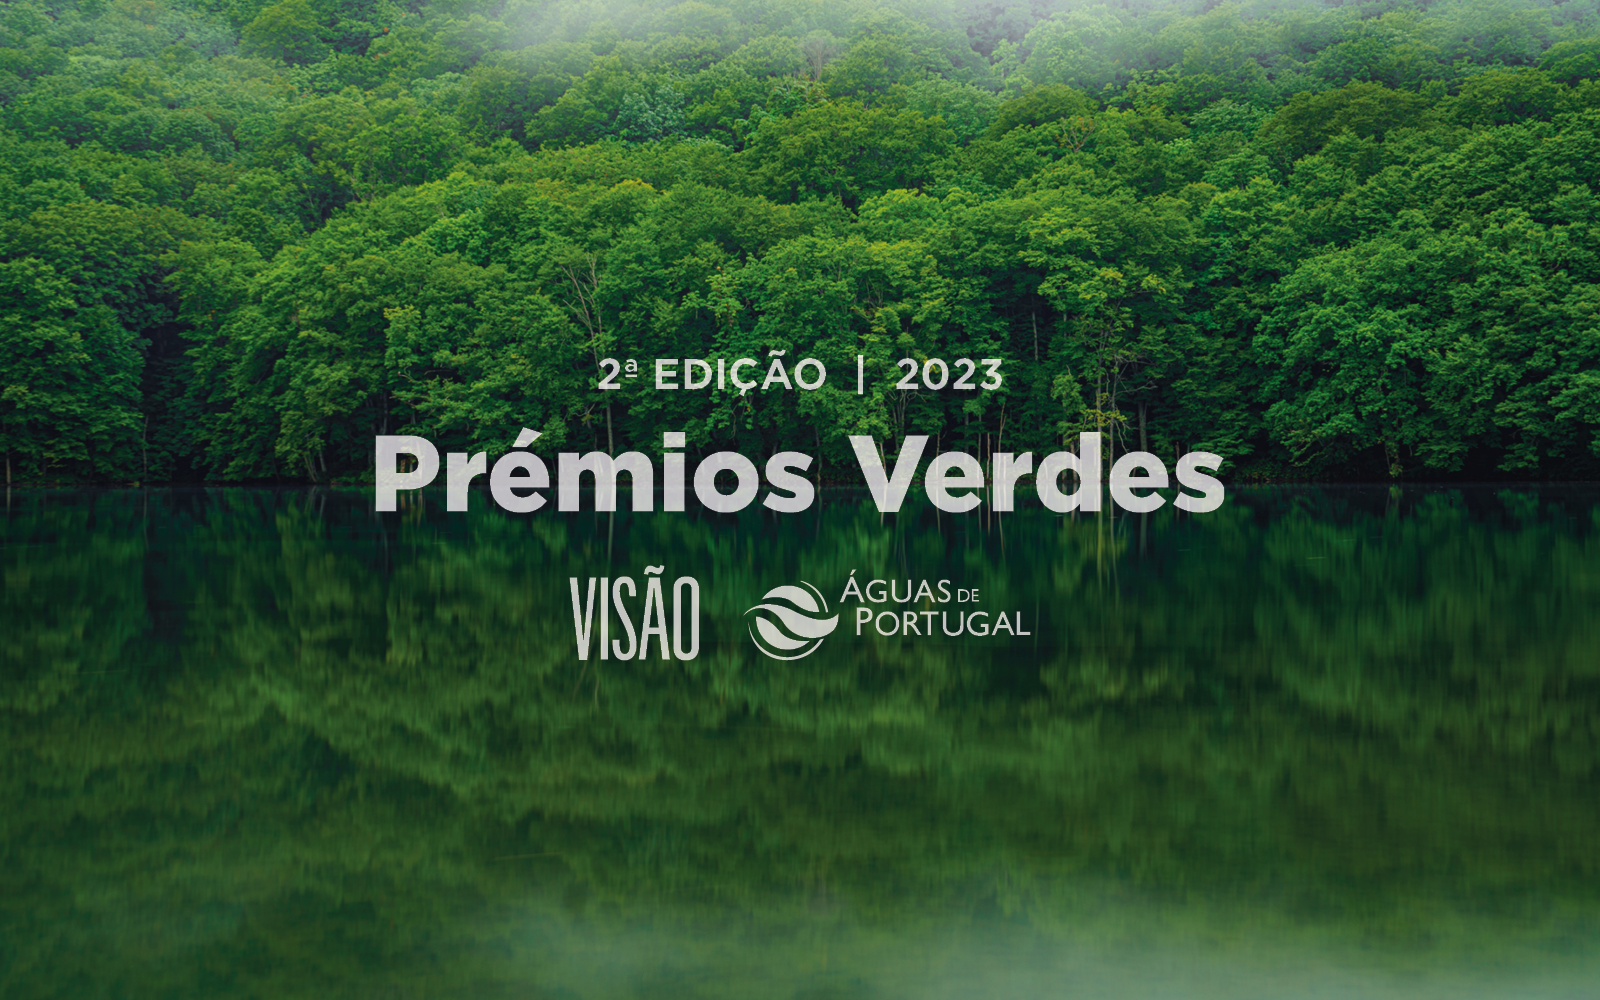 Estão a decorrer as inscrições para a 2.ª edição dos Prémios Verdes VISÃO + Grupo Águas de Portugal até 9 de abril 